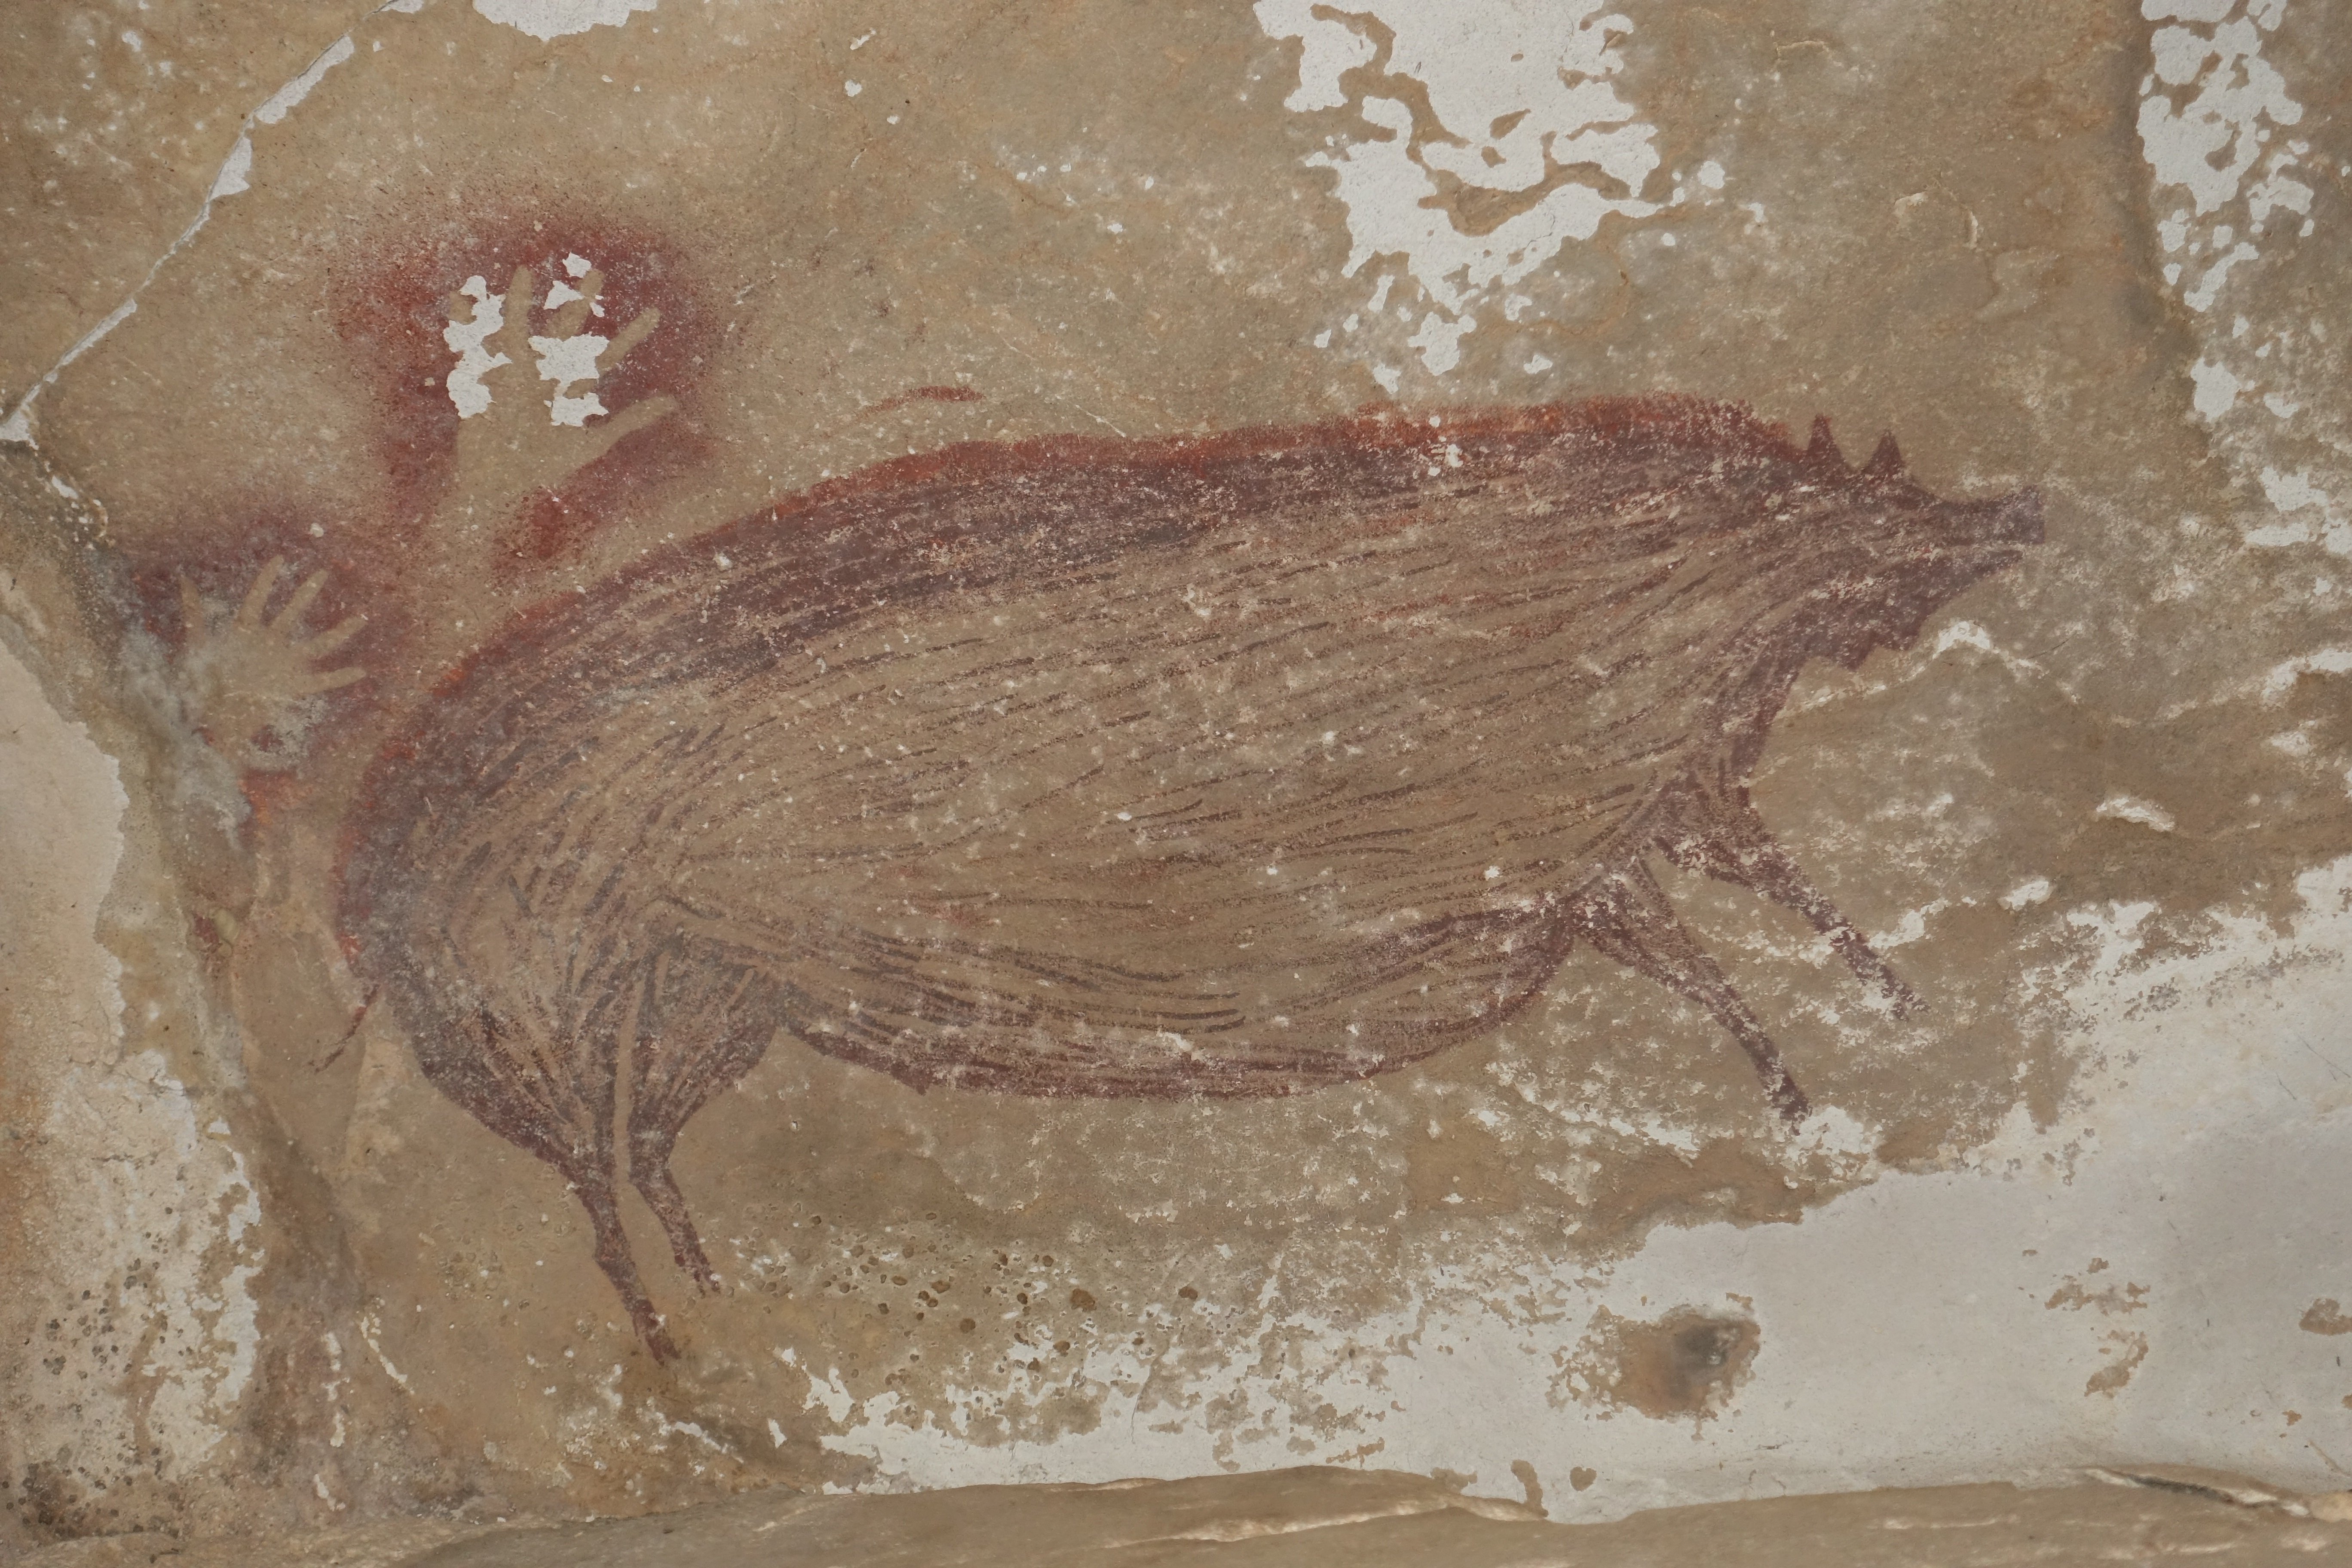 Hallazgo de película en Indonesia: un cerdo, la obra de arte más antigua del mundo